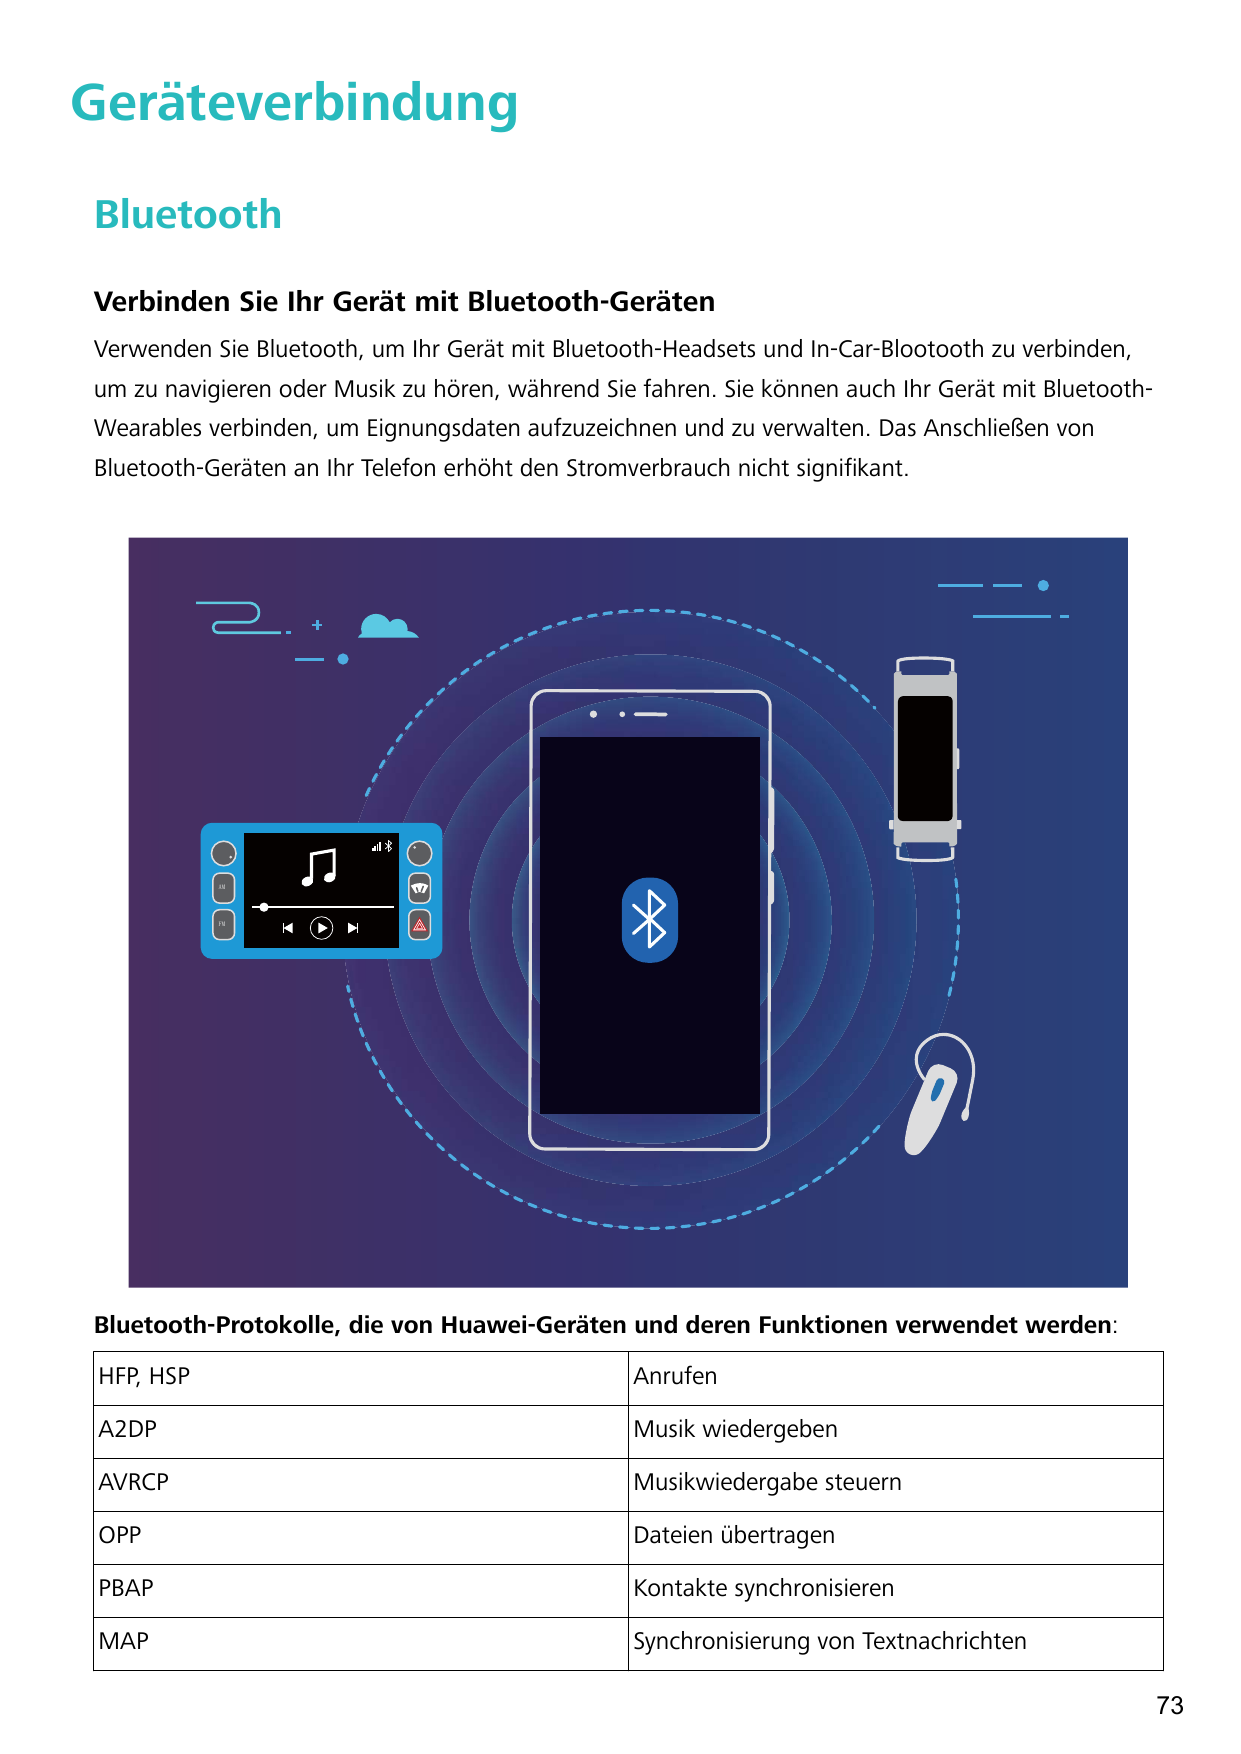 GeräteverbindungBluetoothVerbinden Sie Ihr Gerät mit Bluetooth-GerätenVerwenden Sie Bluetooth, um Ihr Gerät mit Bluetooth-Headse